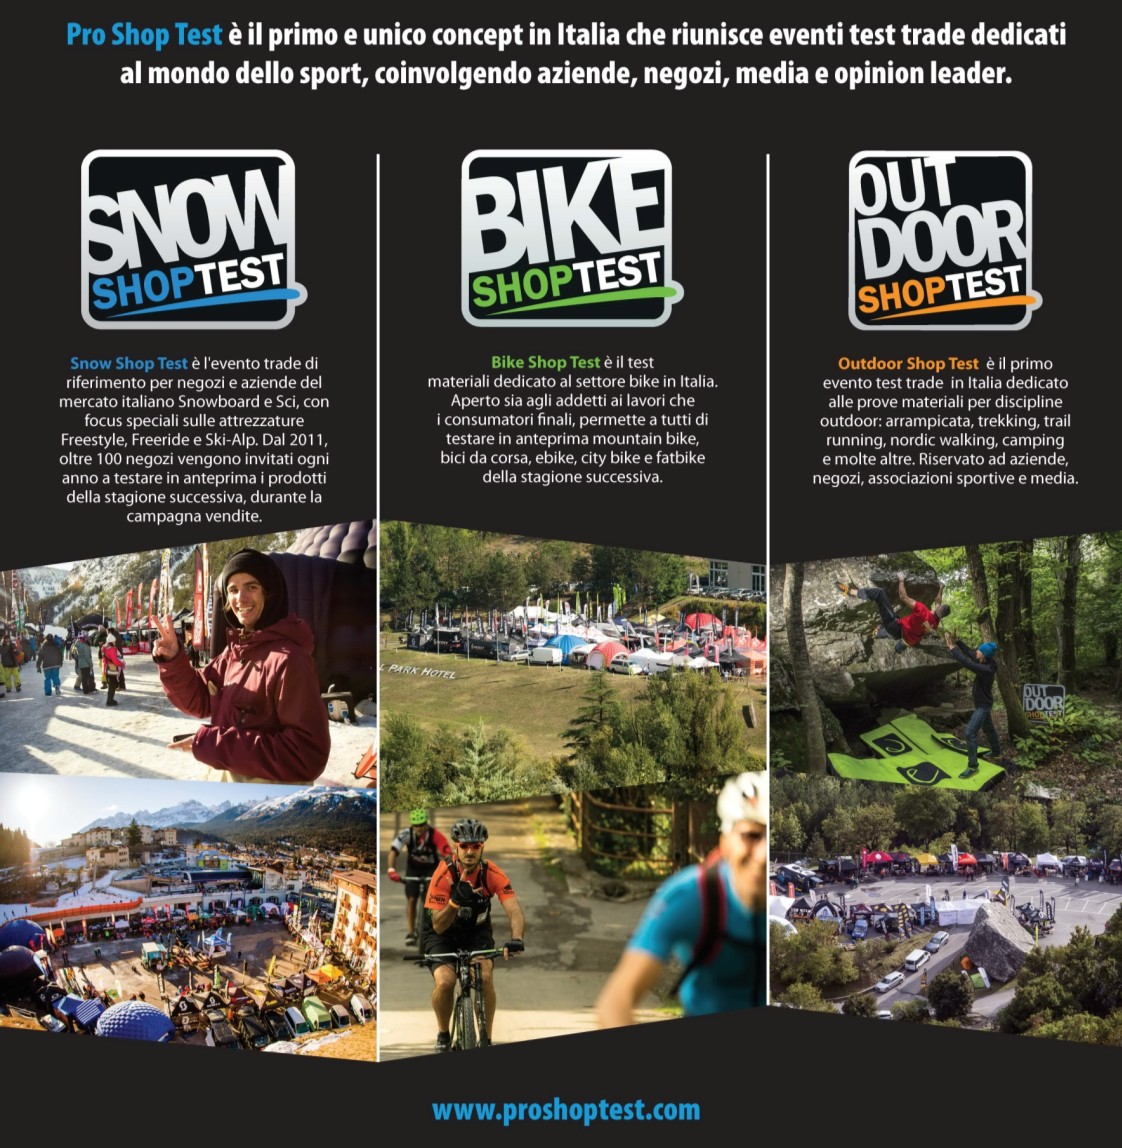 PROMOUNTAIN Bike Shop Test fa parte del PRO SHOP TEST Tour 2016 SNOW SHOP TEST evento B2B dedicato al mercato sci, snowboard,